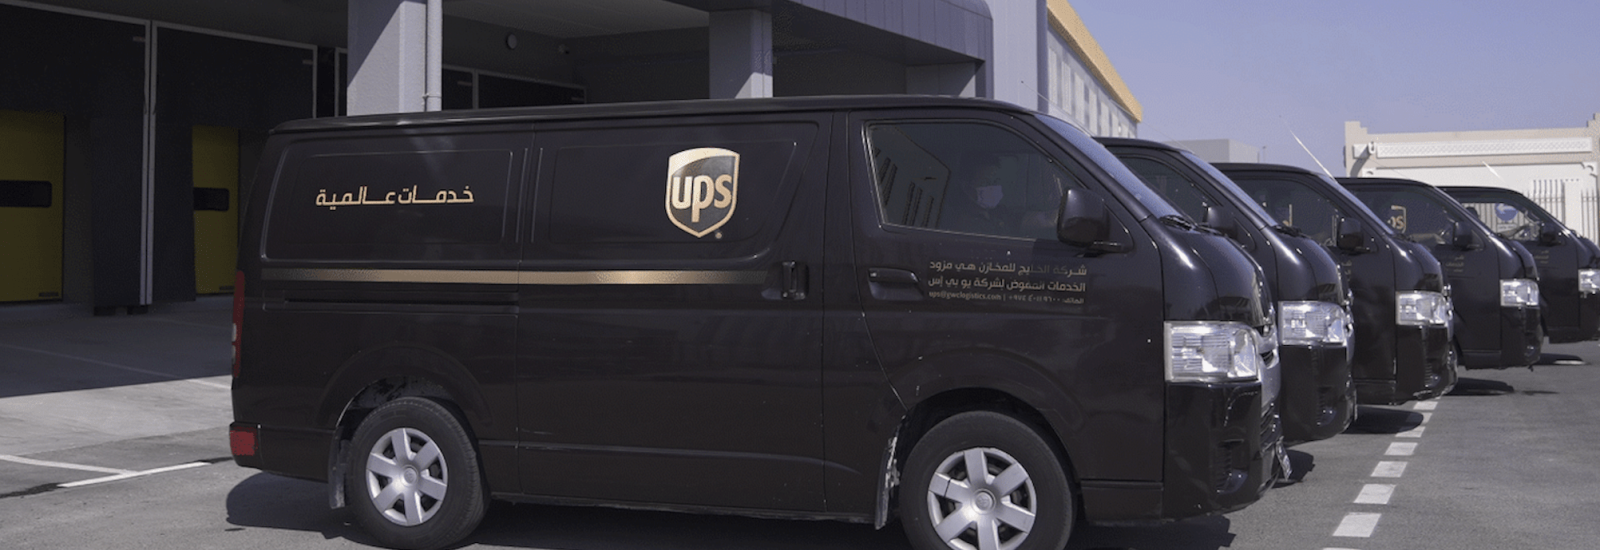 Fleet of UPS dark brown delivery vans